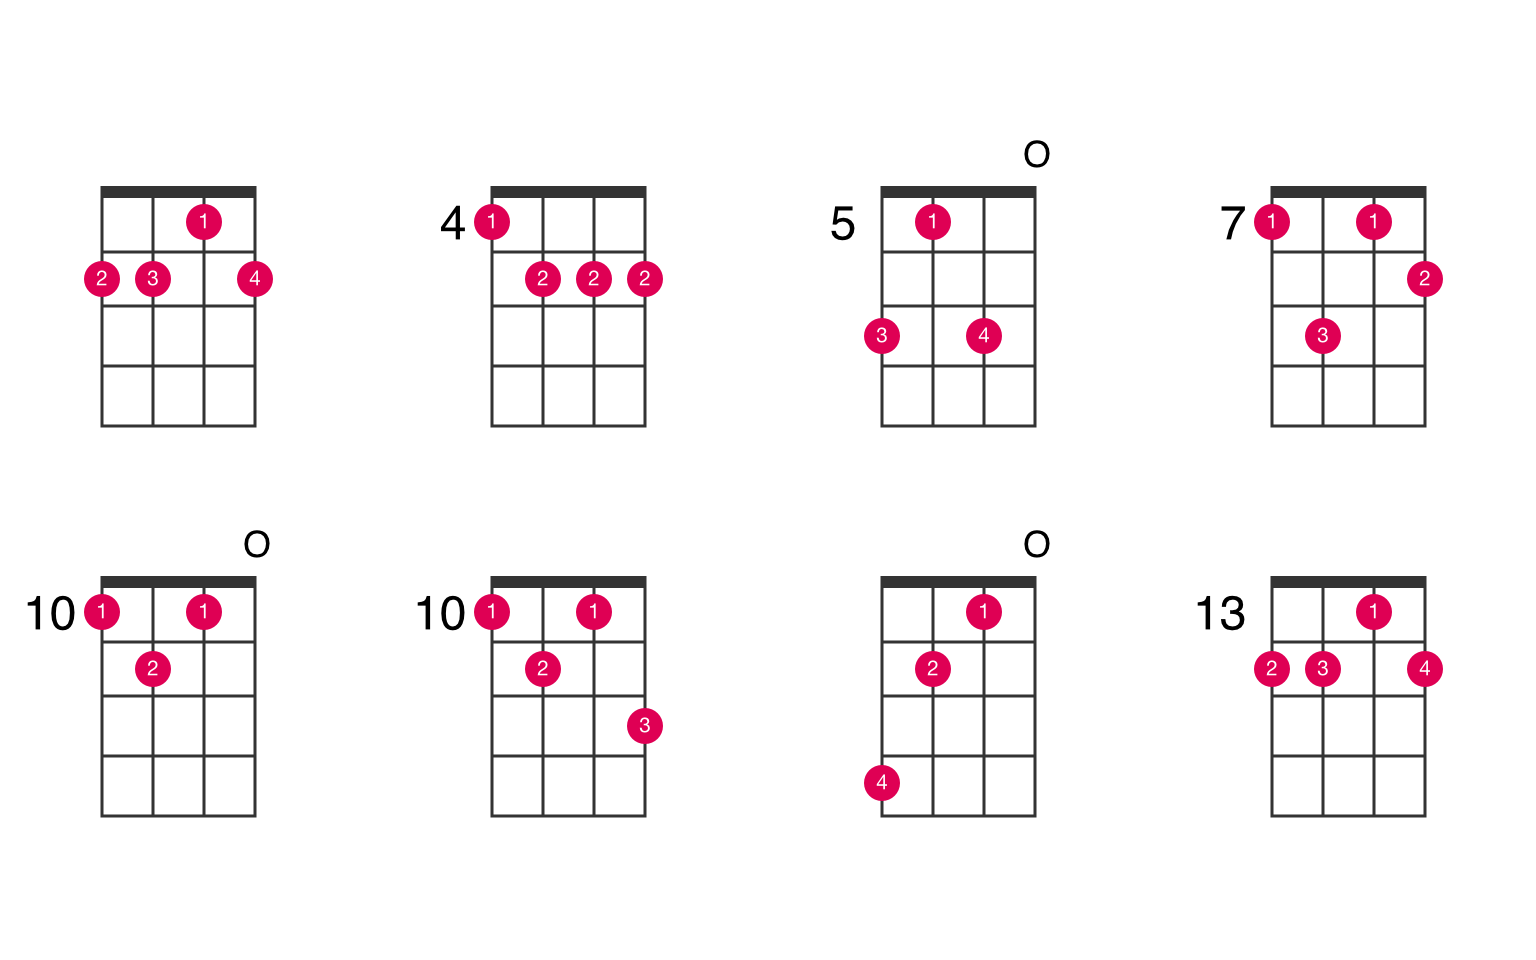 D minor major 6 ukulele chord - UkeLib Chords